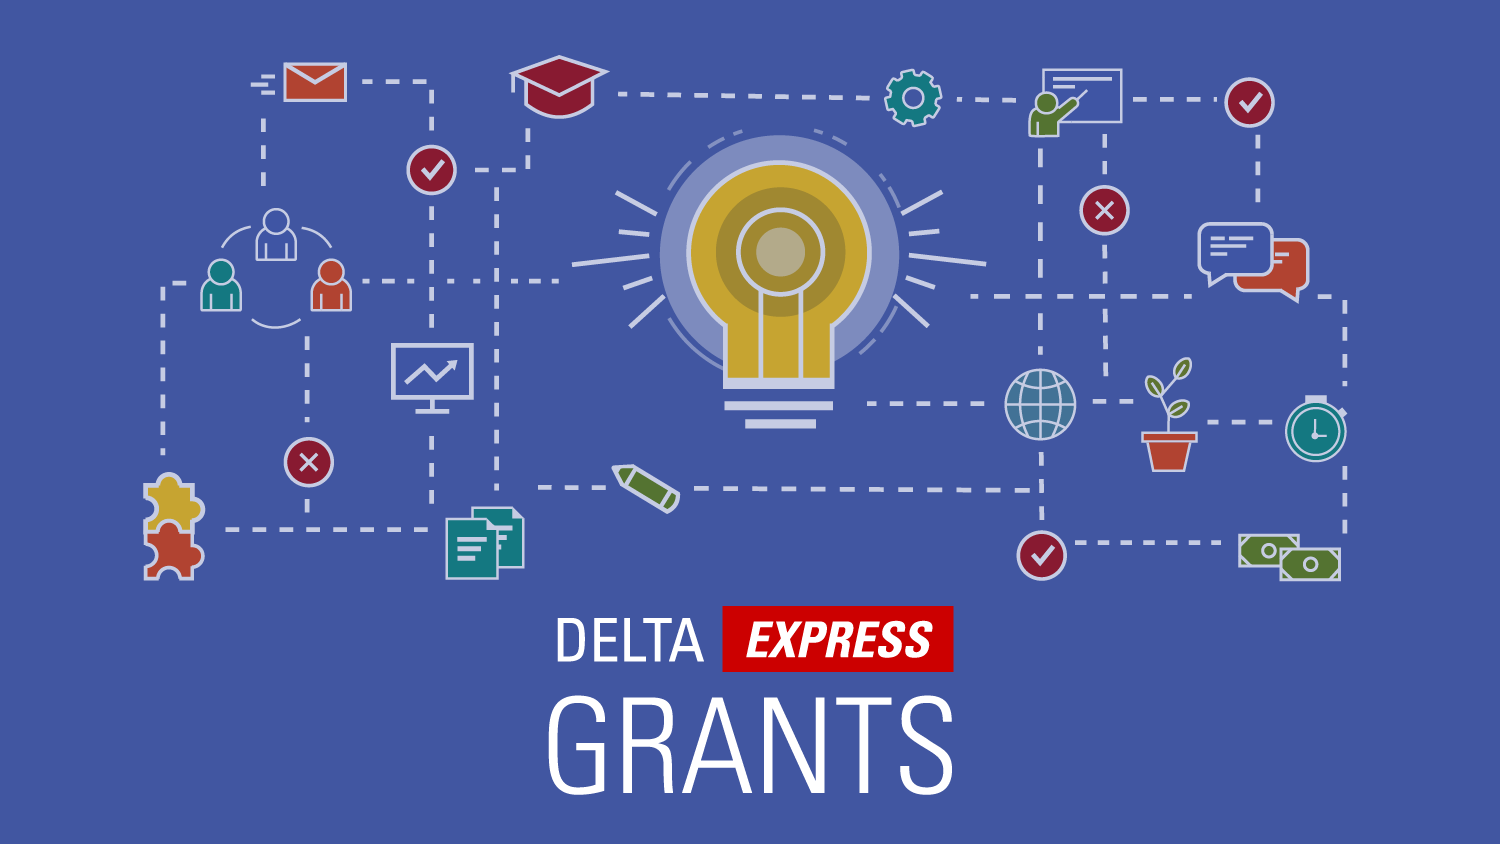 DELTA Express Grants.